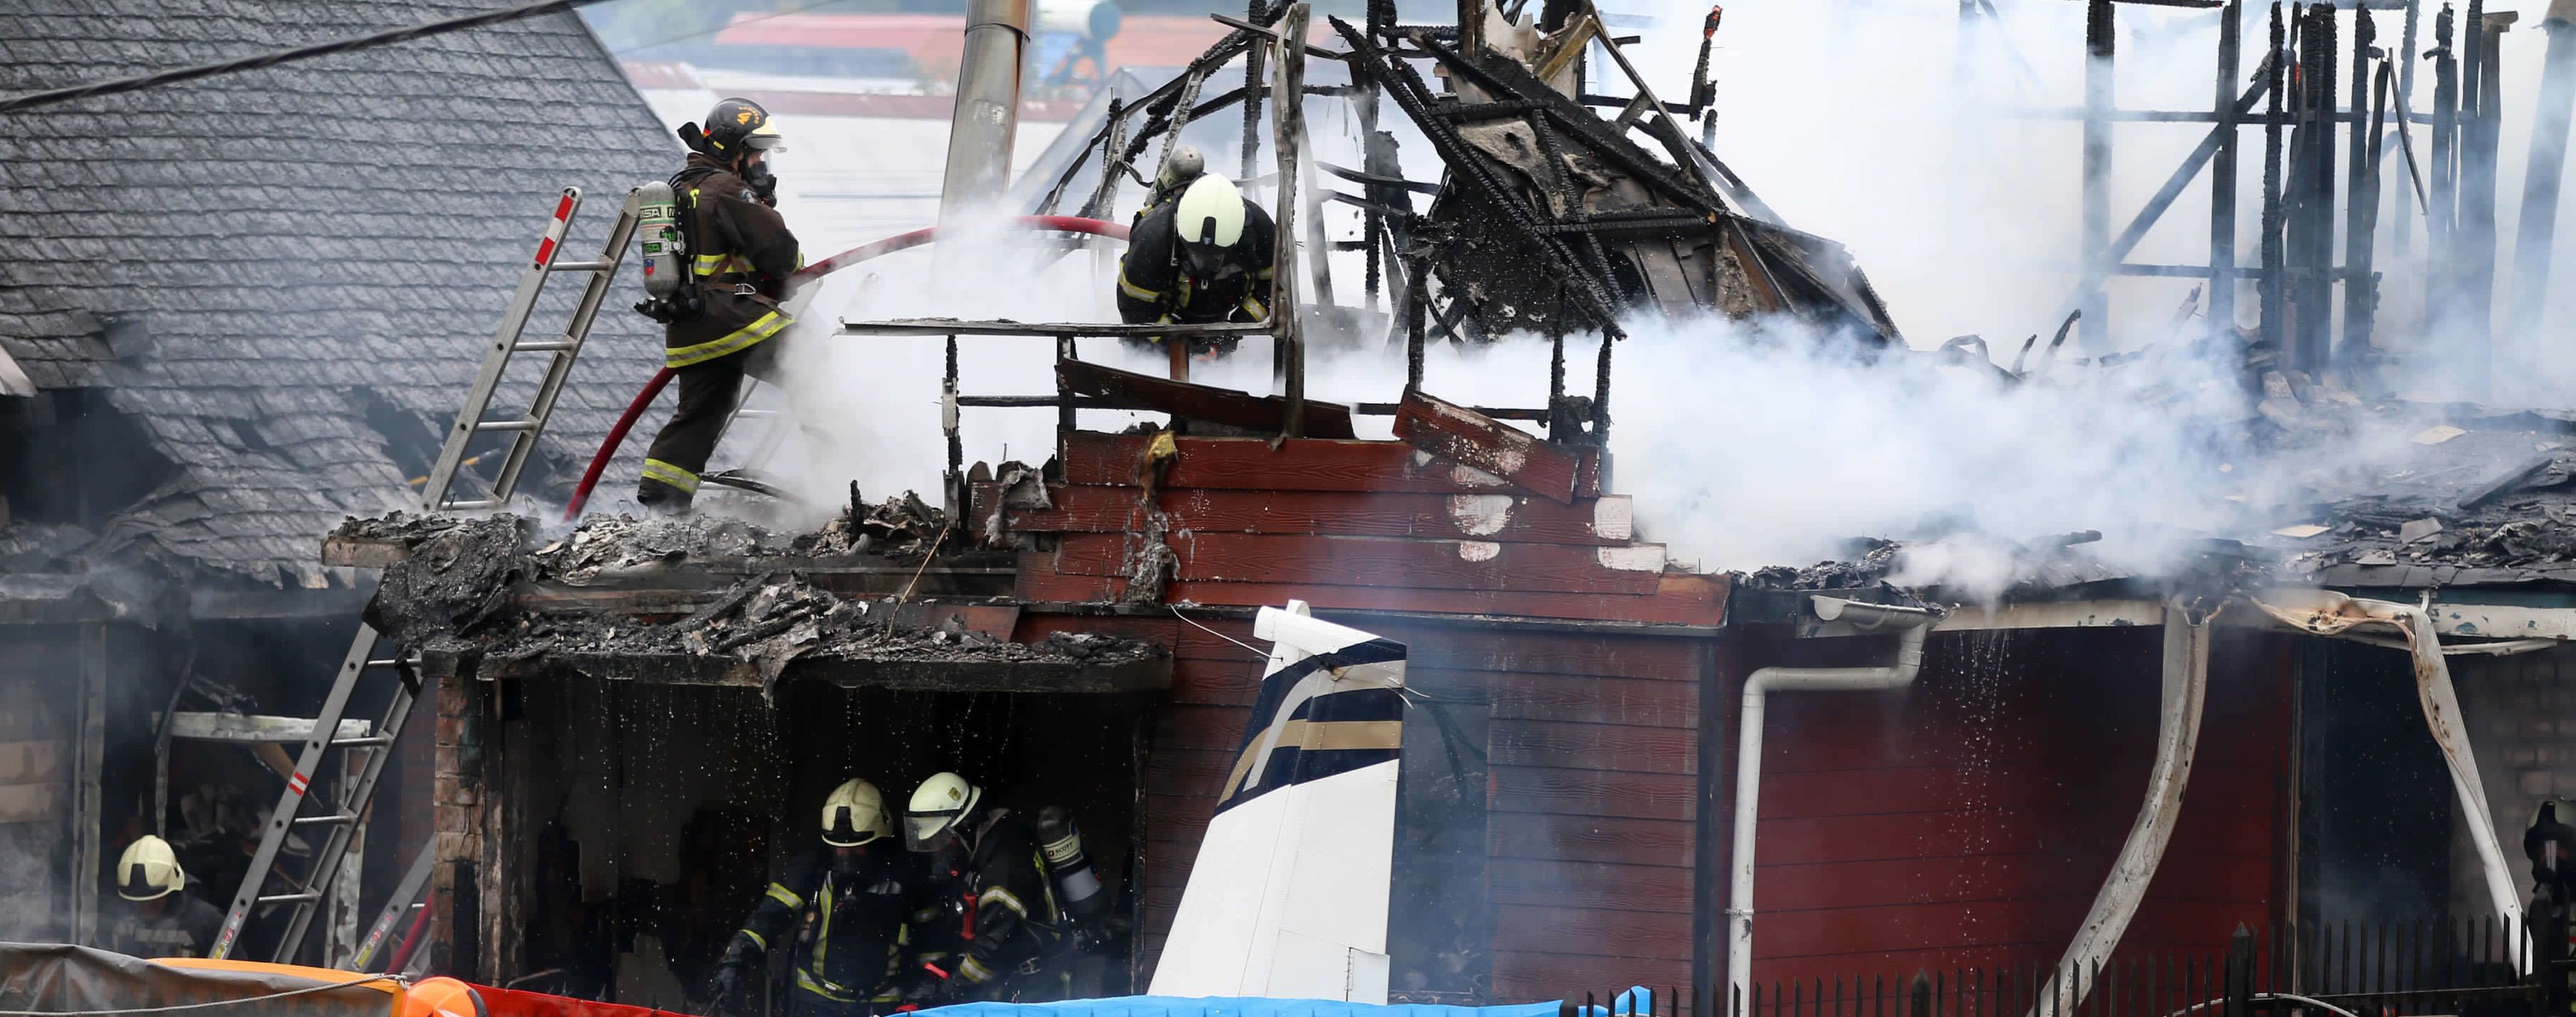 В Чили самолет упал на дом. Есть погибшие